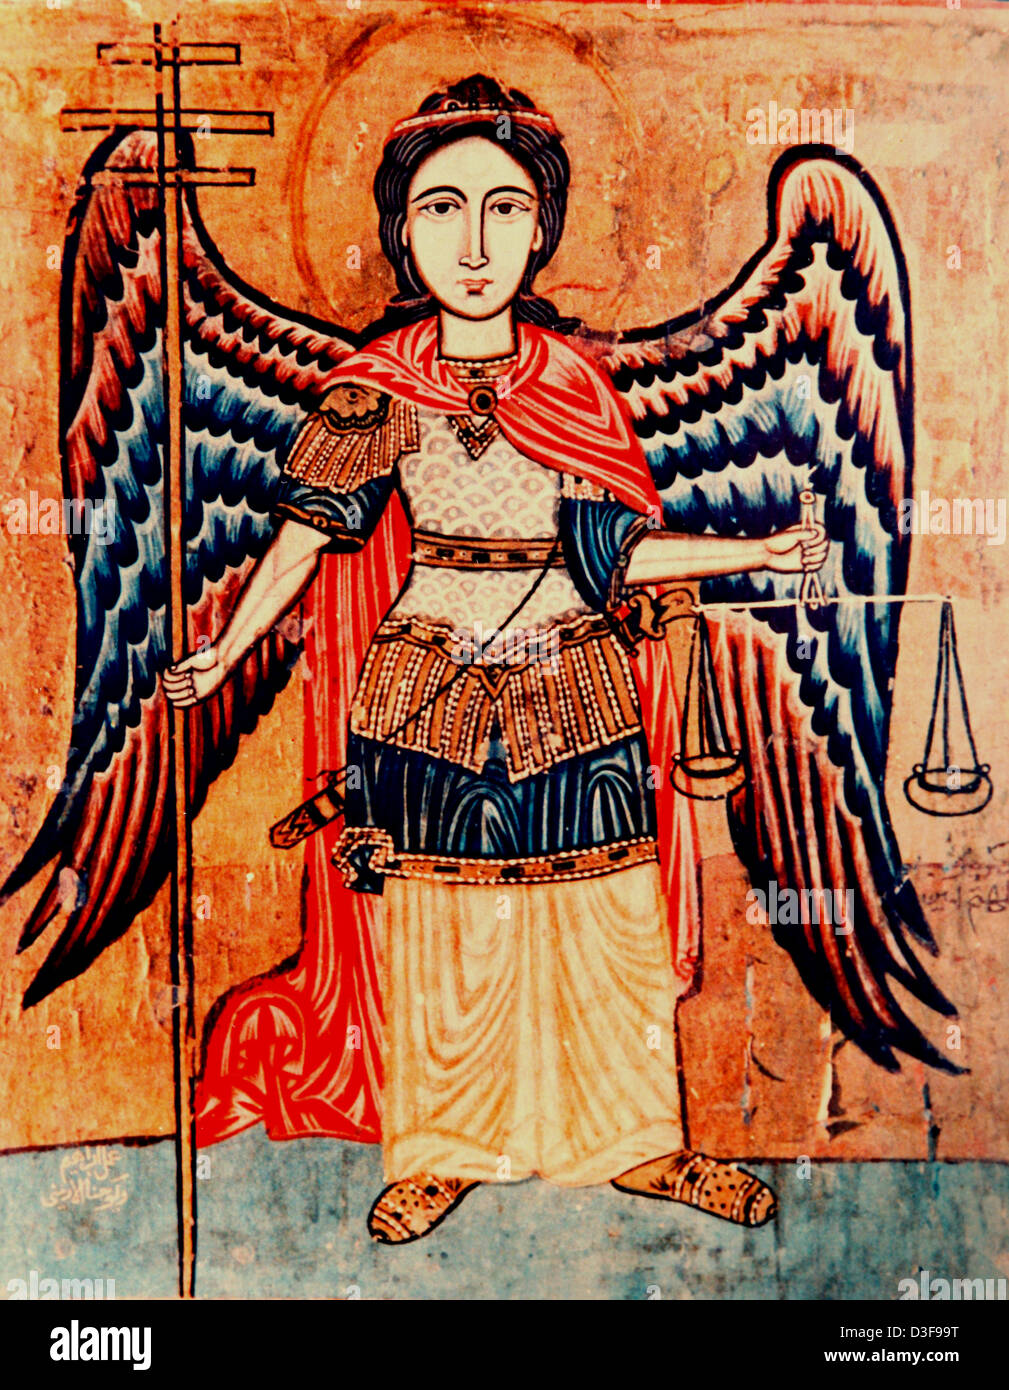 Arte cristiano copta que representa al Arcángel Miguel sosteniendo las escalas de la justicia Foto de stock